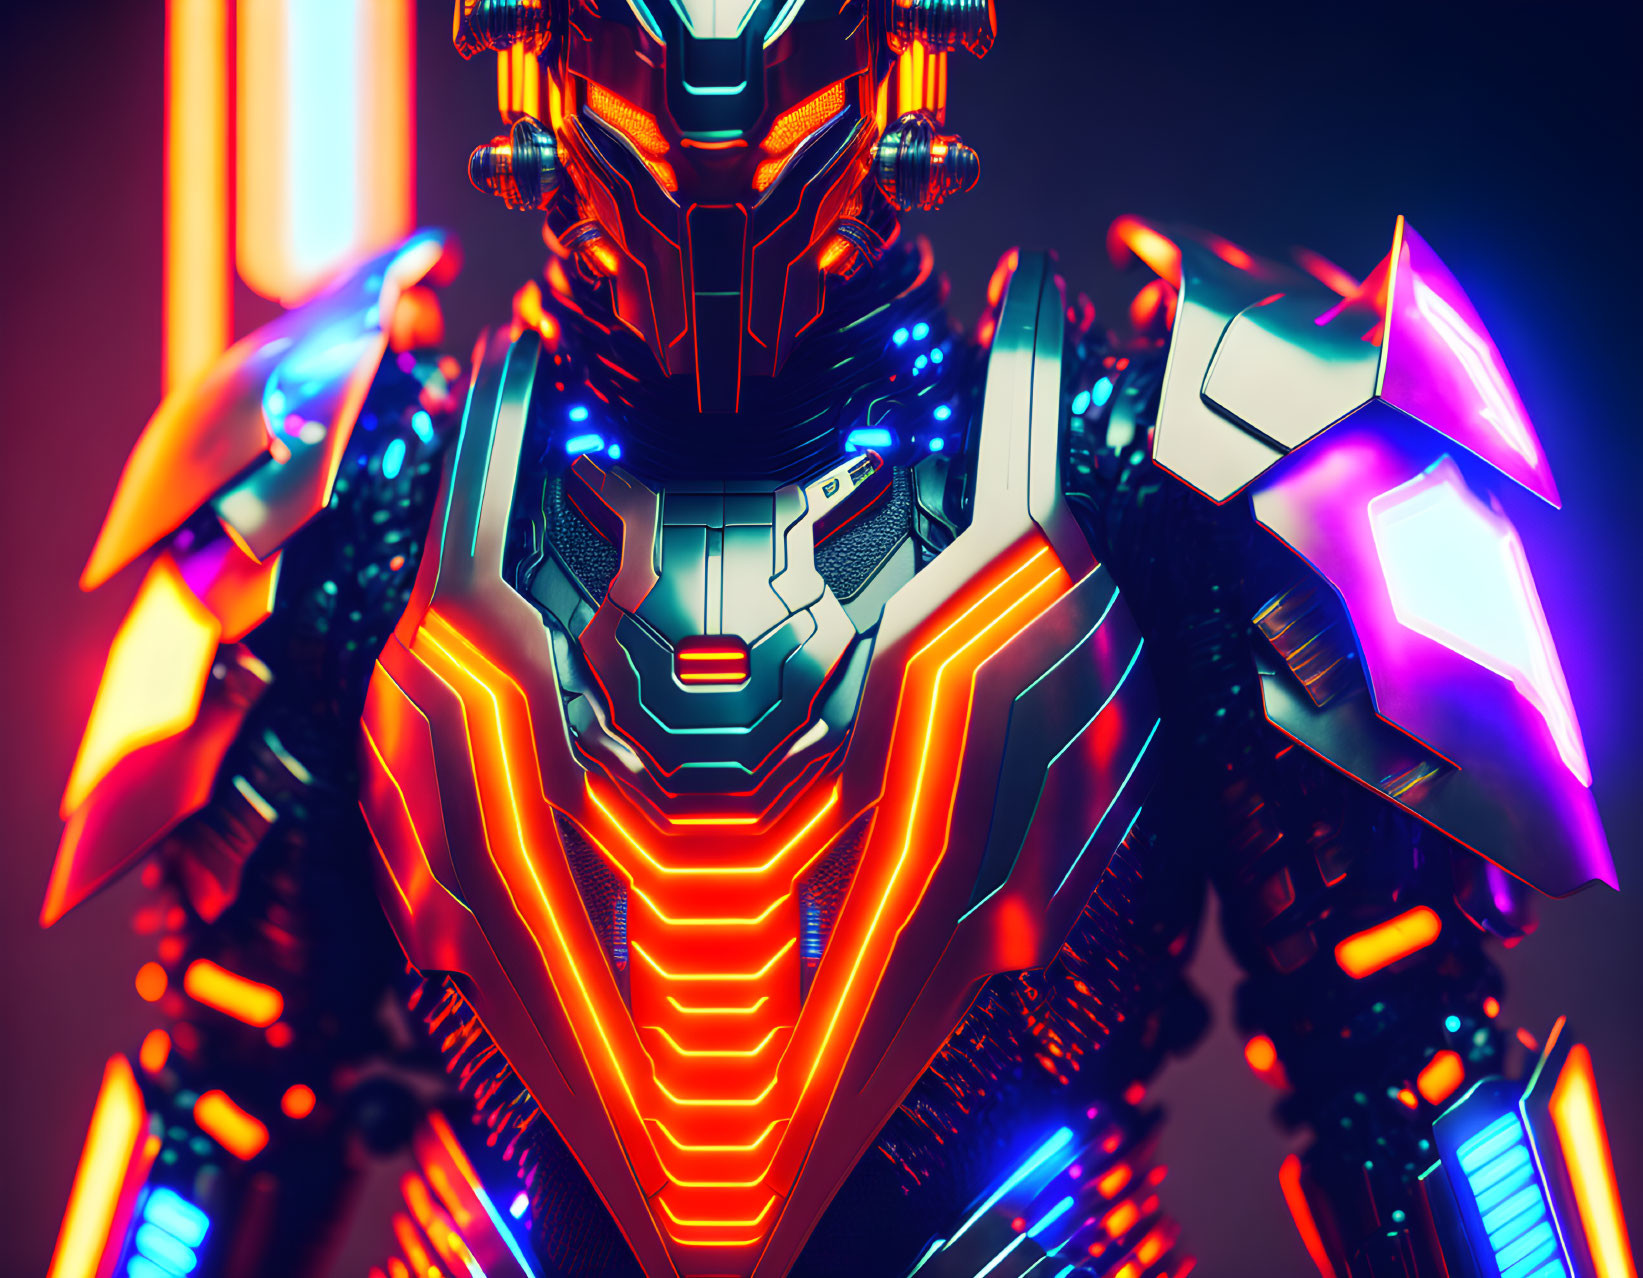 A humanoid armored futuristic cybernetic samurai